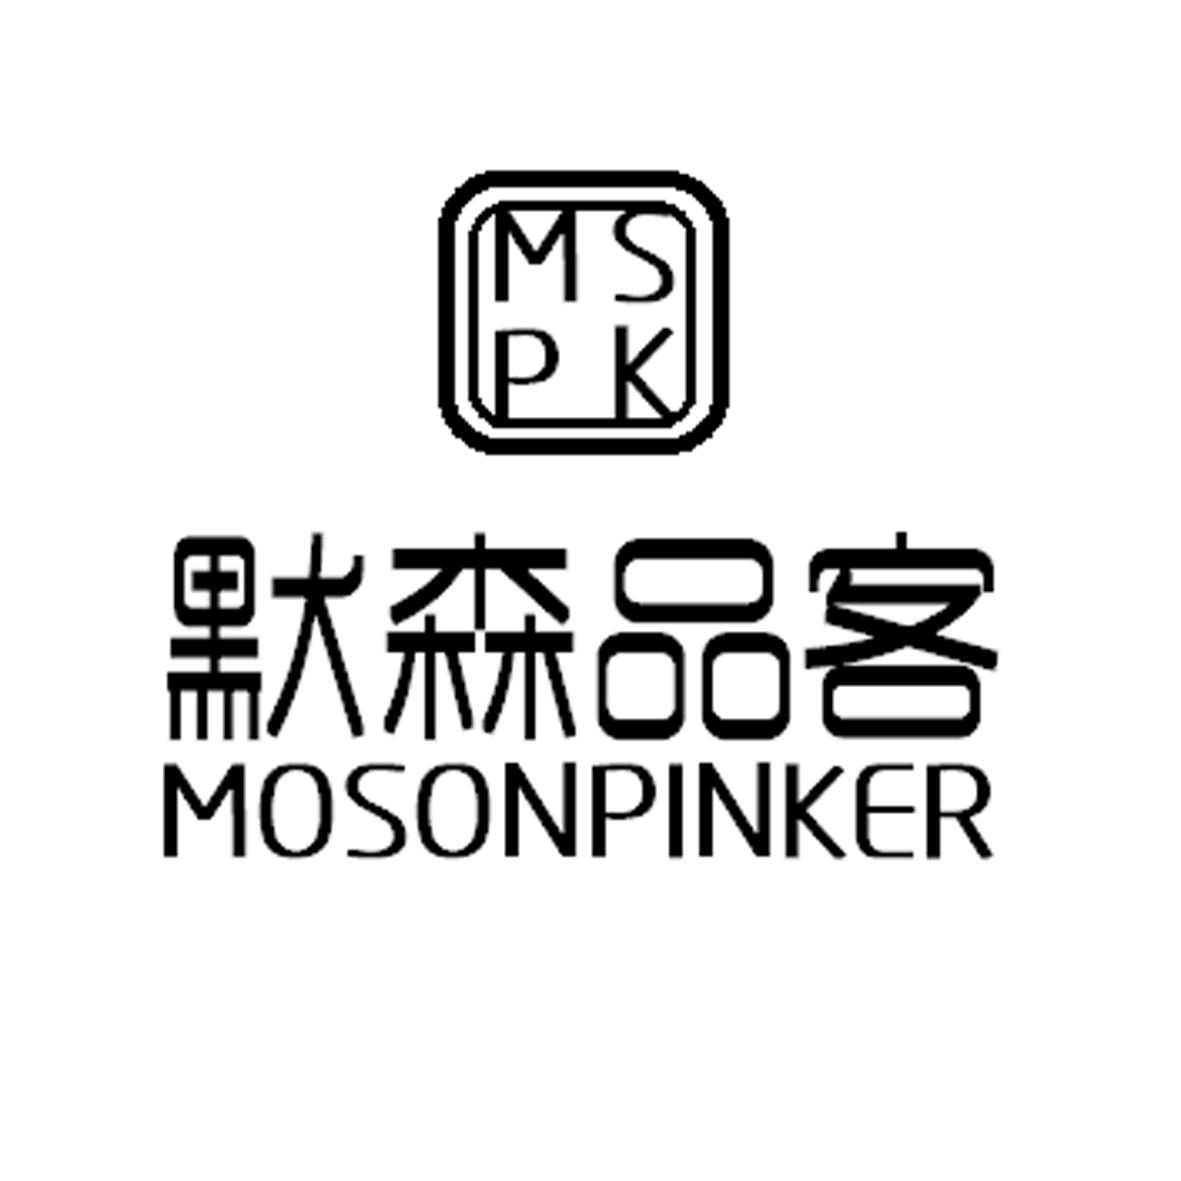 35类-广告销售默森品客 MSPK  MOSONPINKER商标转让